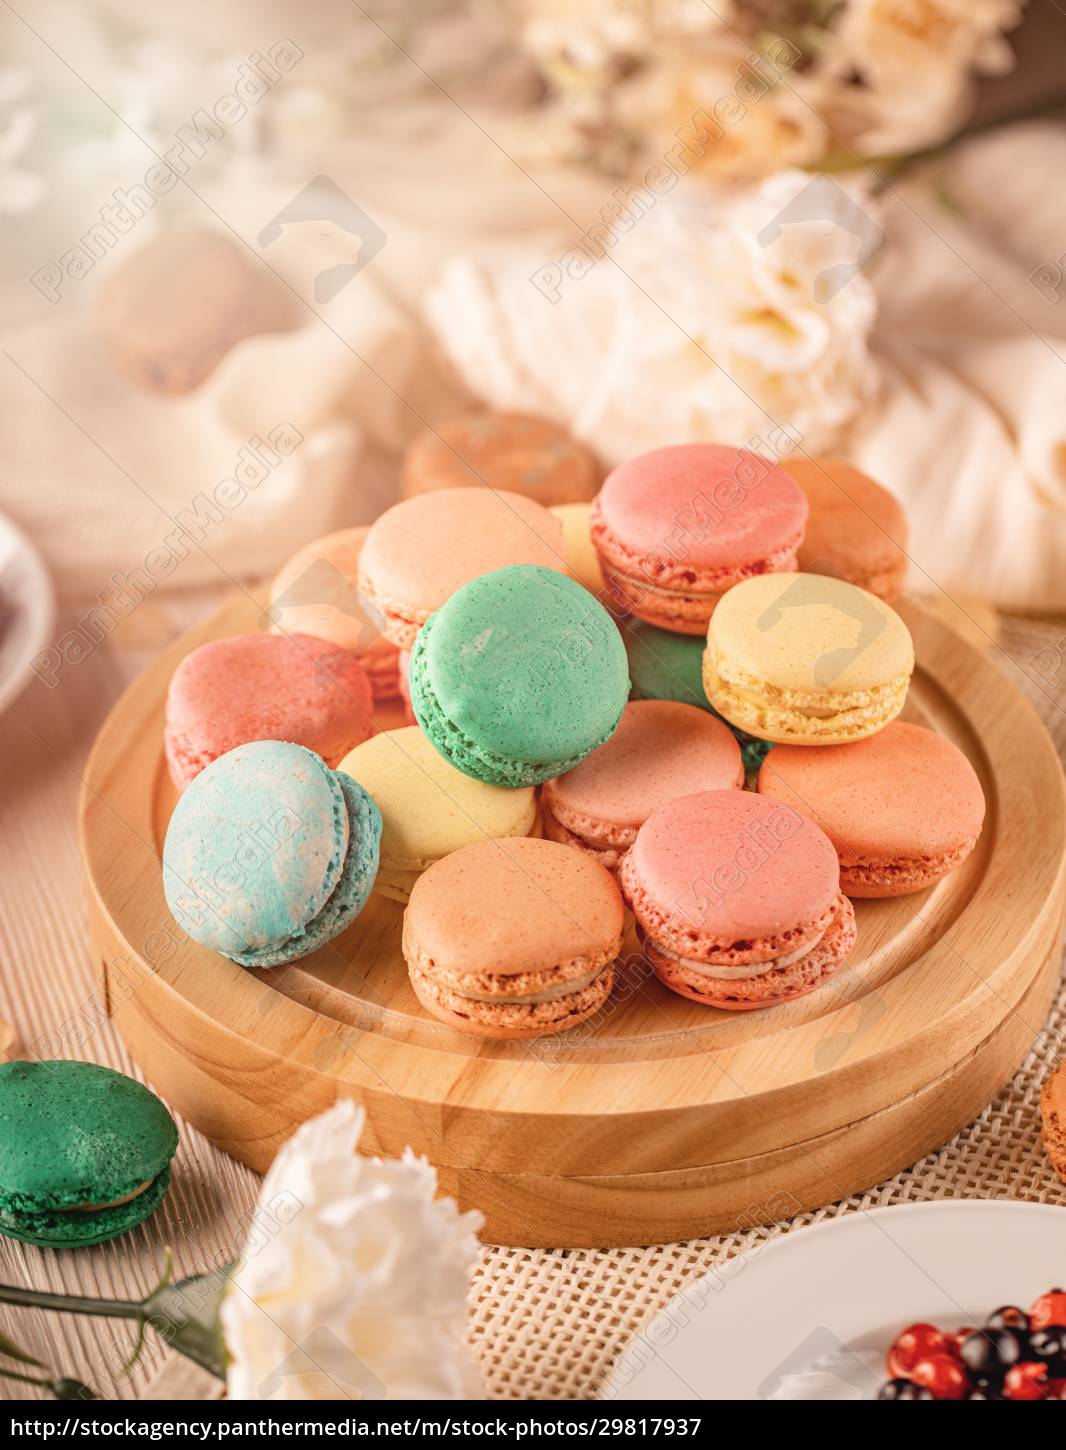 Französische Macarons mit verschiedenen würzigen - Lizenzfreies Bild ...